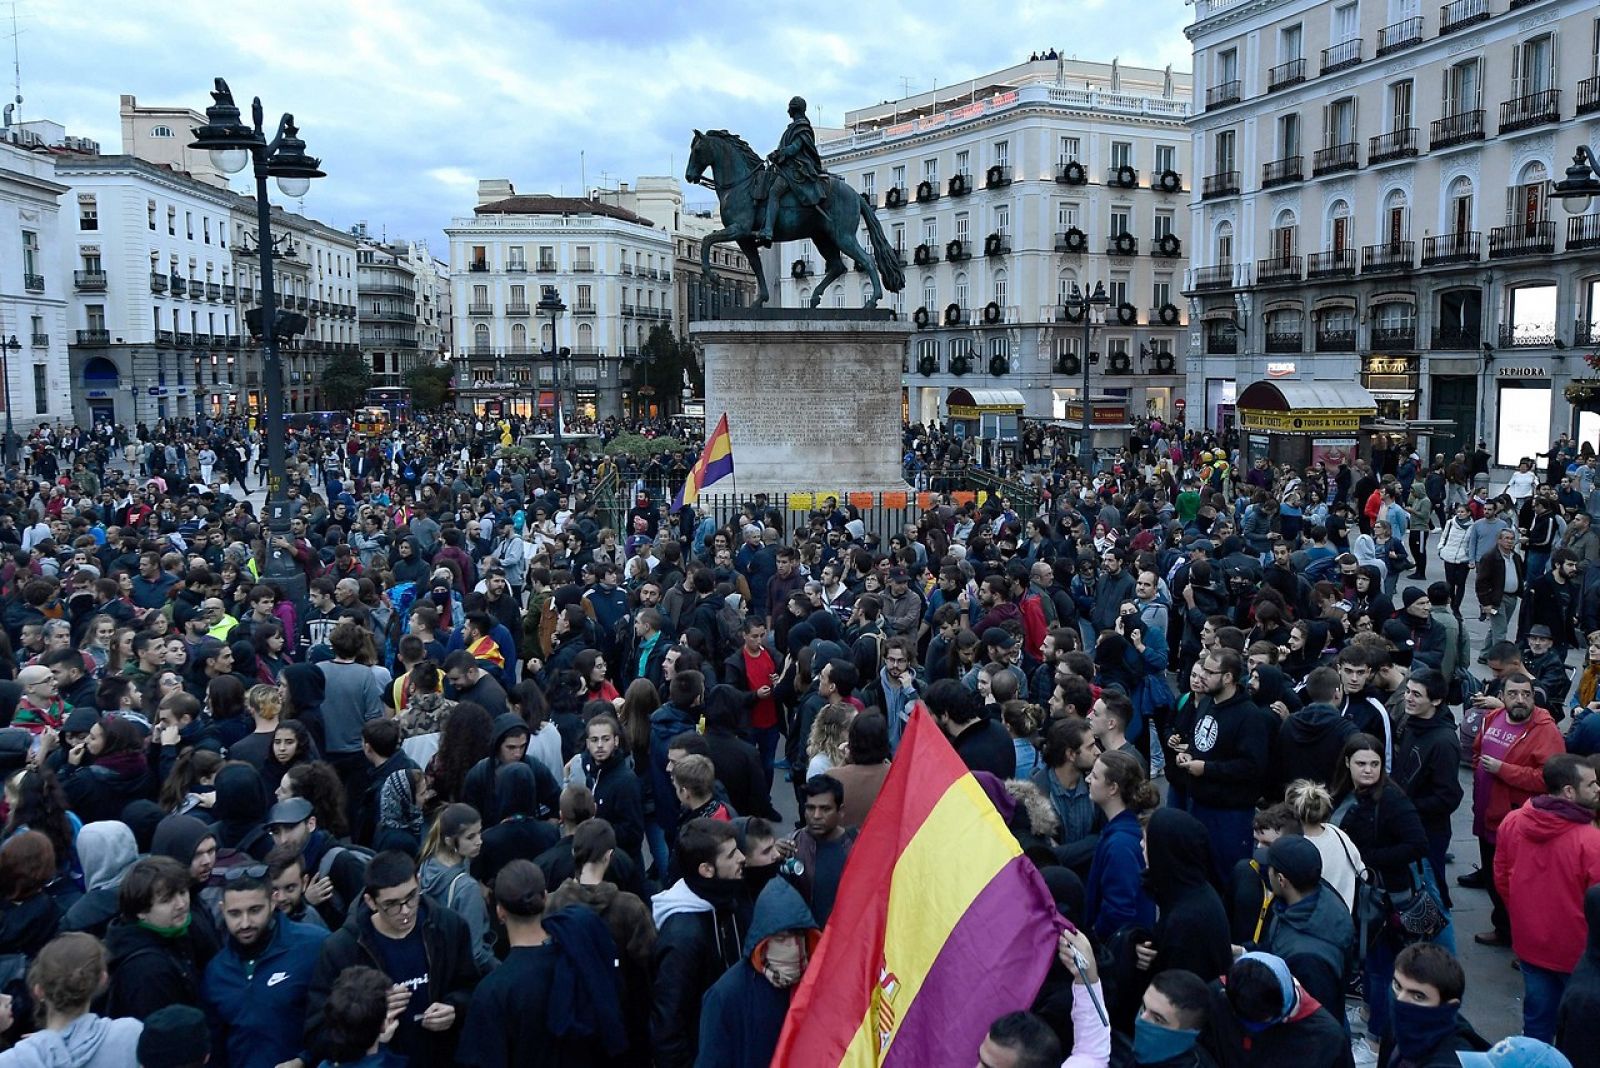 Un detenido y 13 heridos en Madrid tras la marcha por la "amnistía de todos los presos políticos"